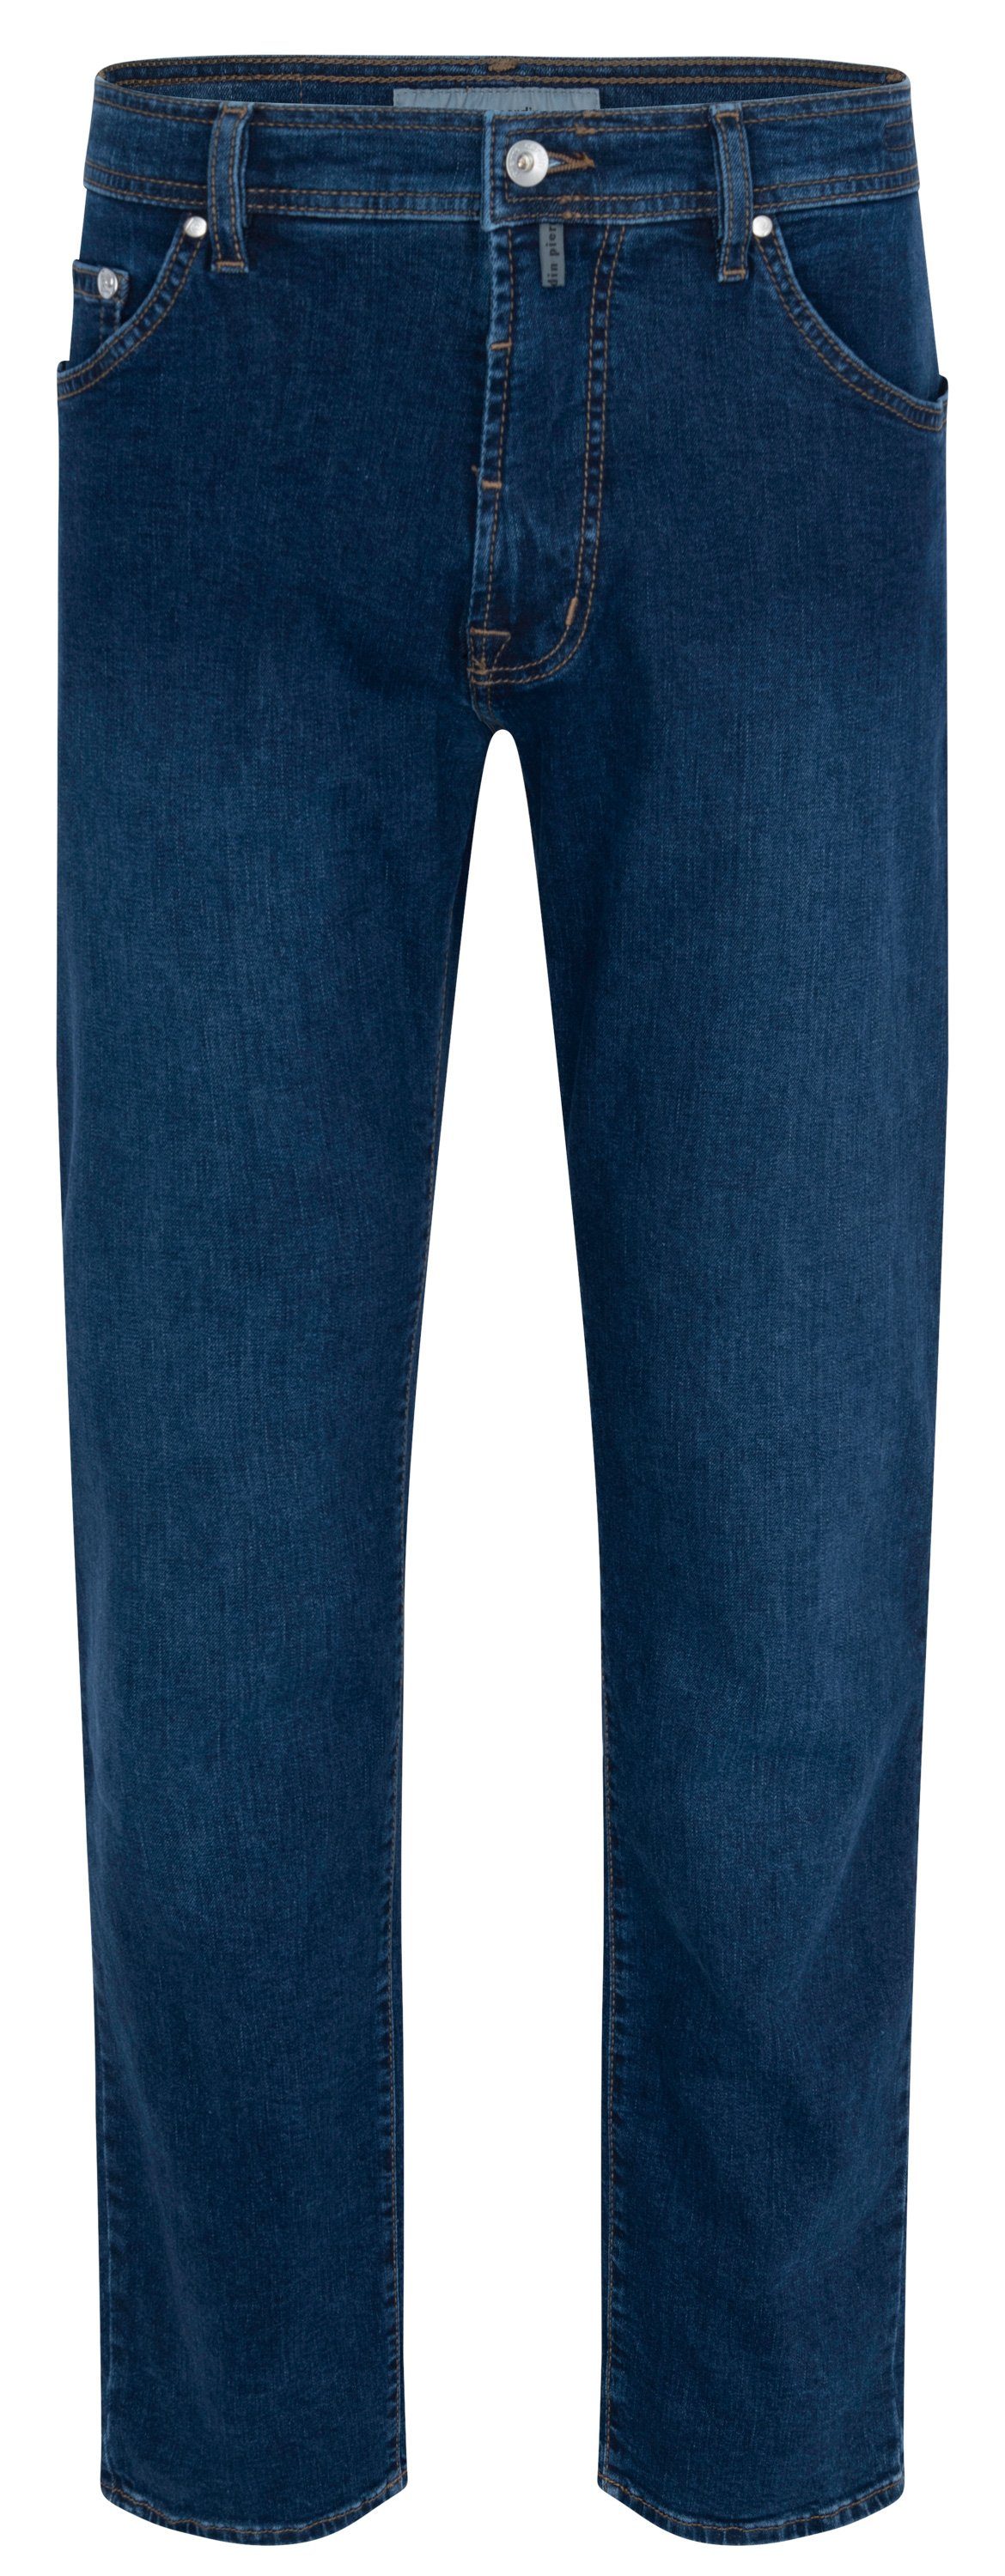 Pierre Cardin 5-Pocket-Jeans PIERRE CARDIN DEAUVILLE dark blue used 31960 8075.6812